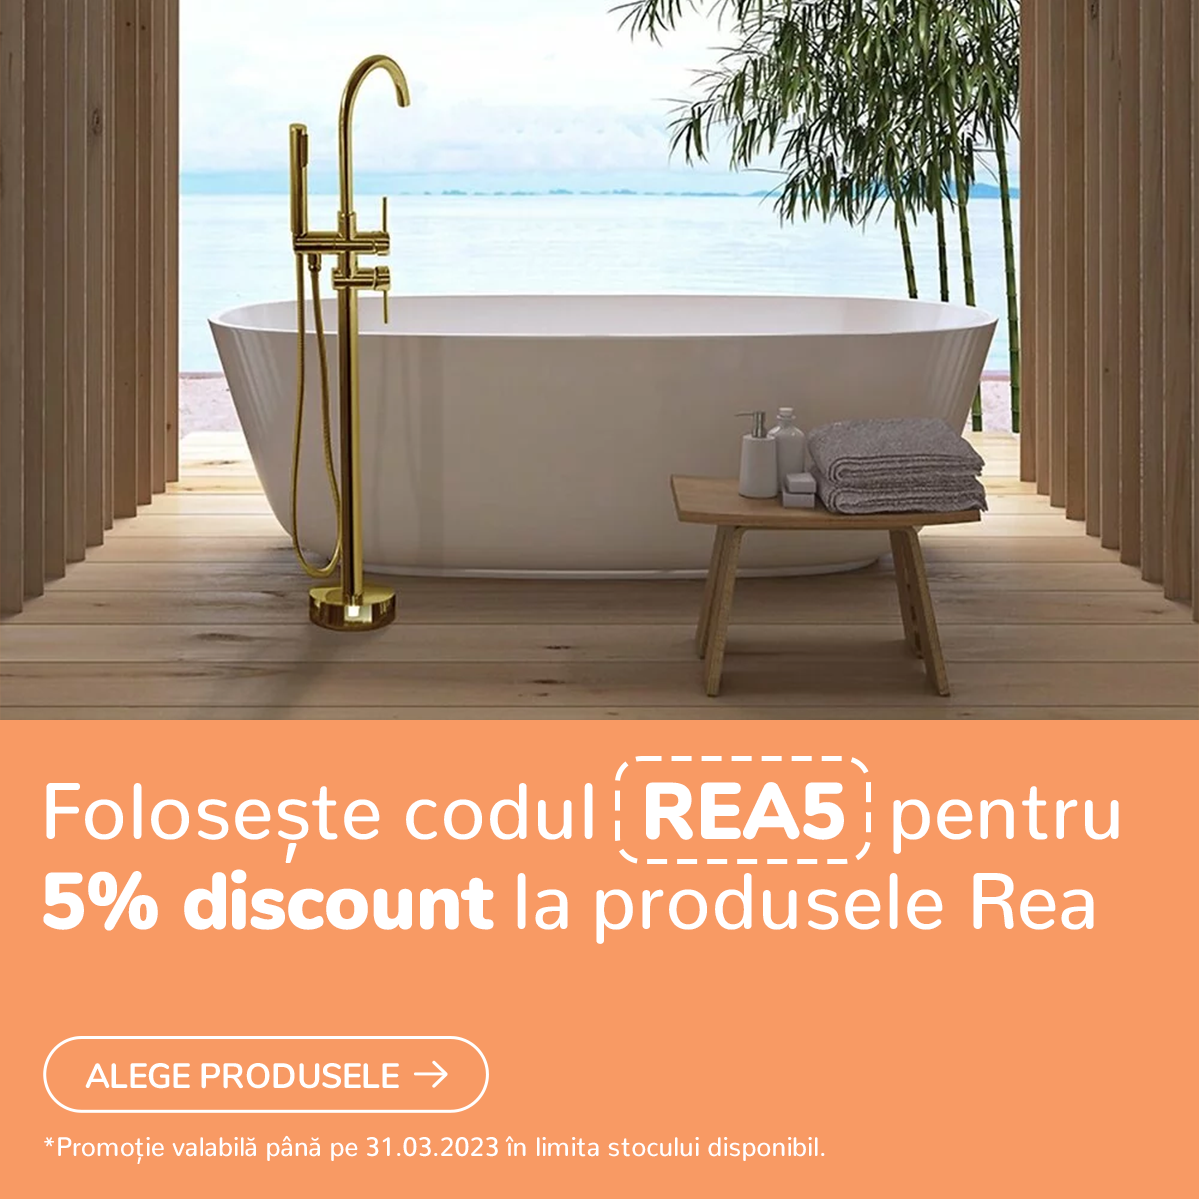 Foloseste codul REA5 pentru -5% discount la produs